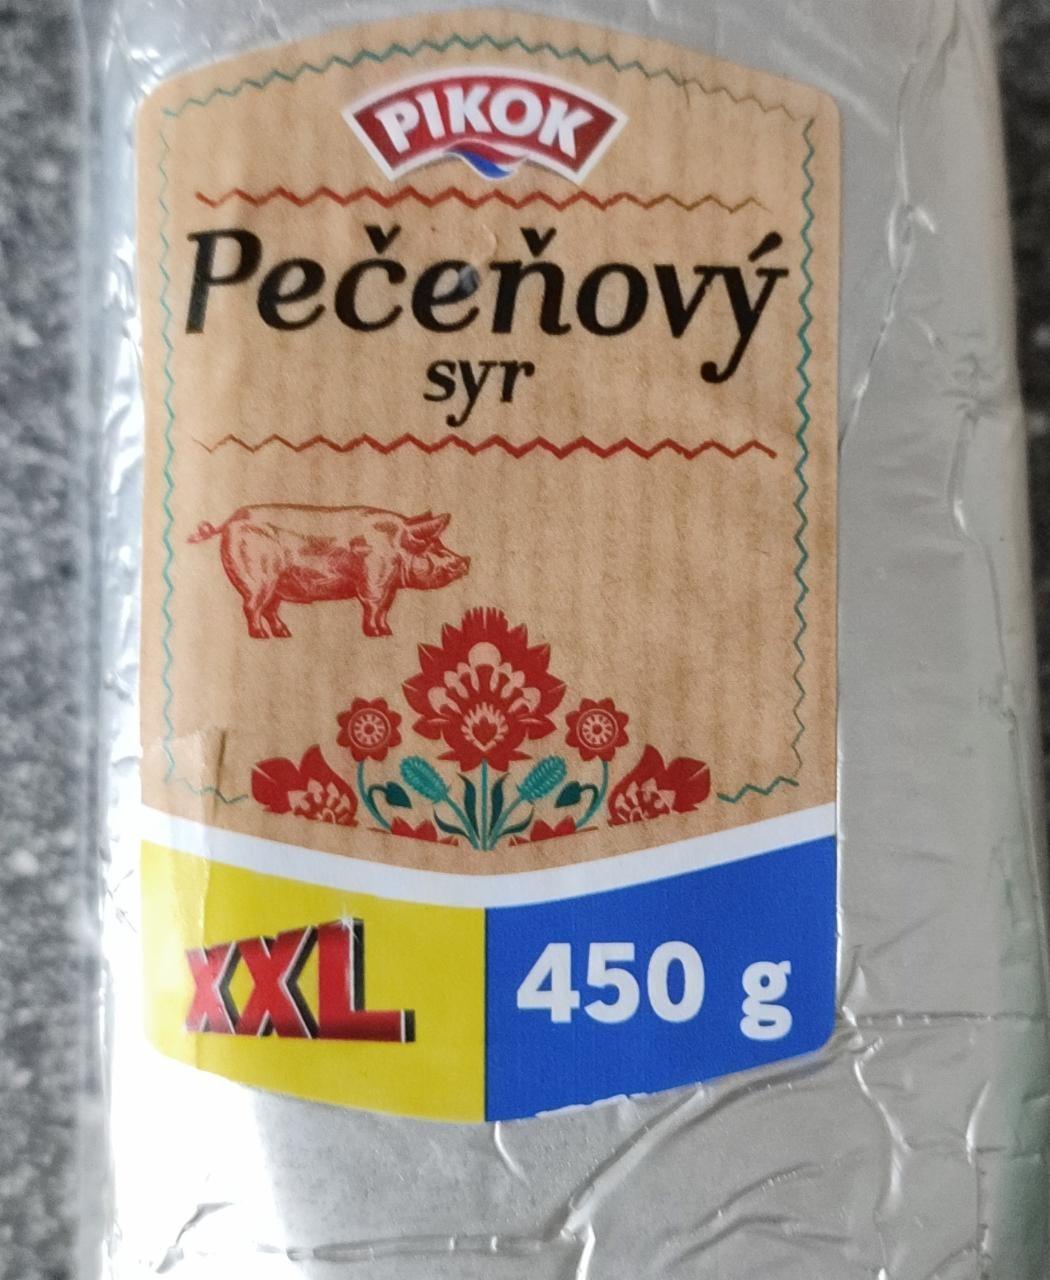 Fotografie - Pečeňový syr Pikok